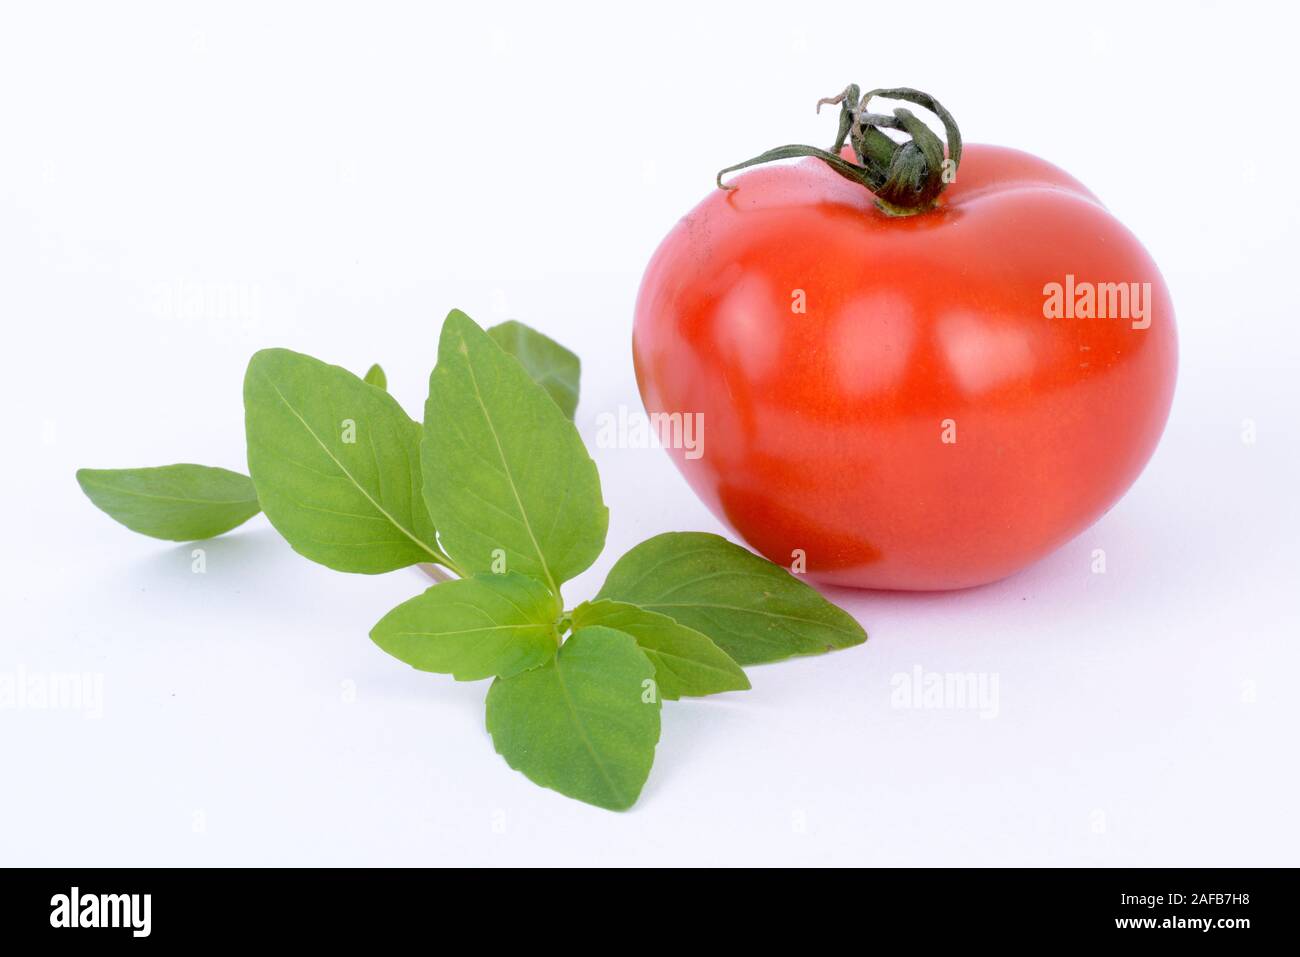 Basilikum (Ocimum basilicum), tomate (Solanum lycopersicum) Foto de stock